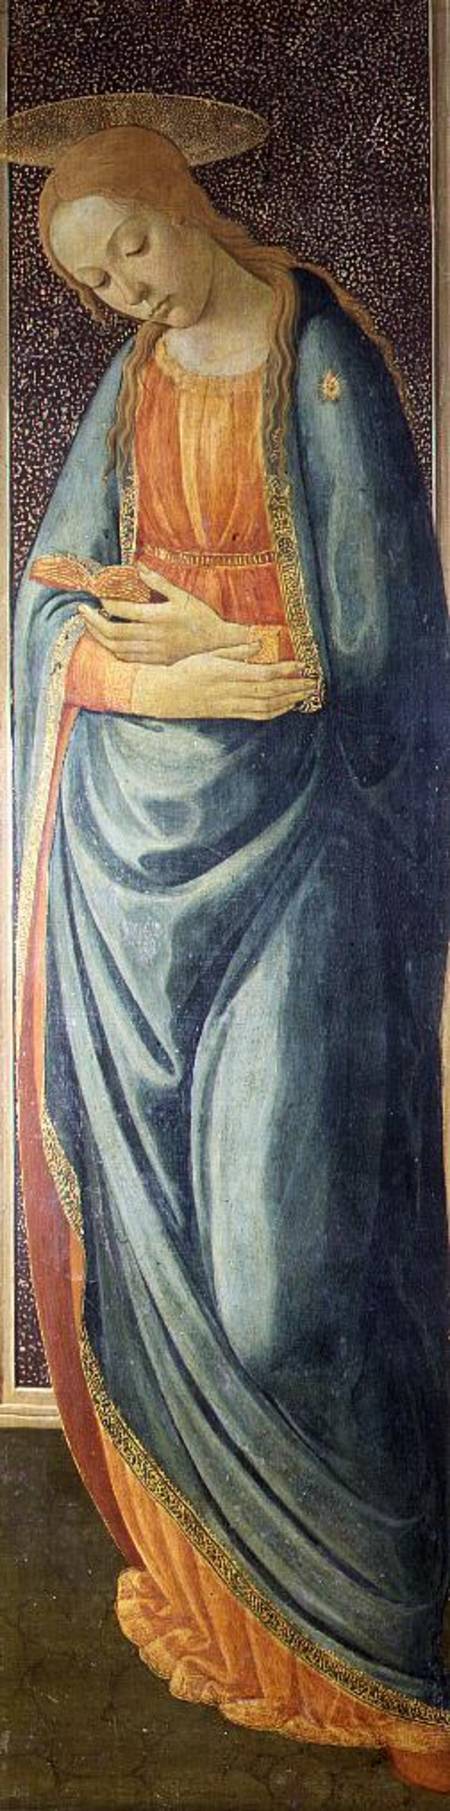 Virgin Mary van Jacopo del Sellaio